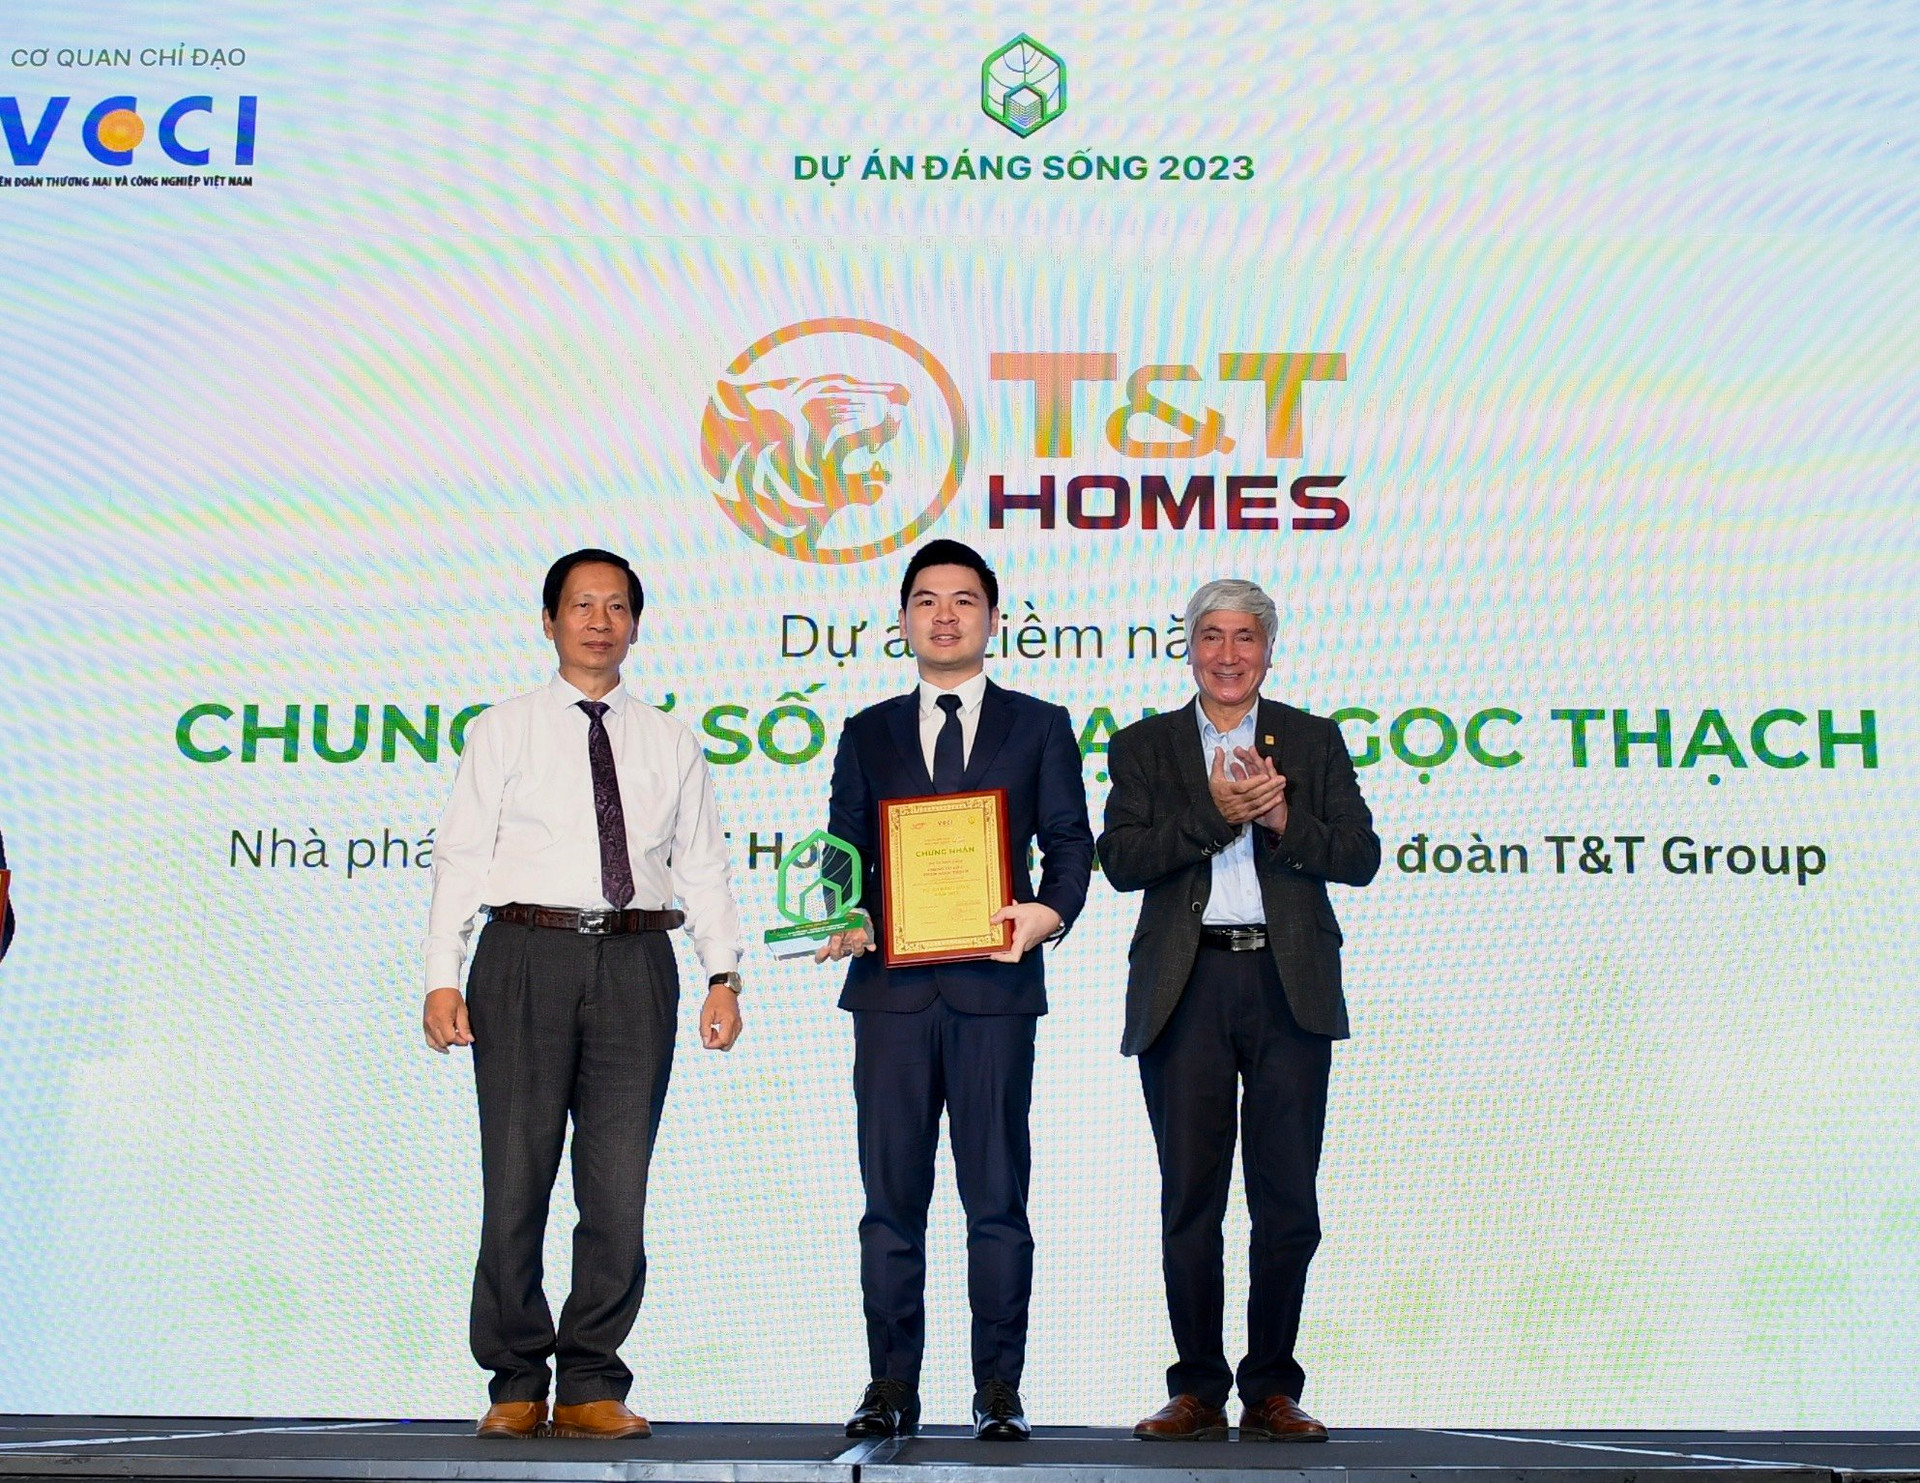 Ông Đỗ Vinh Quang, Chủ tịch HĐQT kiêm Tổng Giám đốc T&T Homes (giữa) nhận Giải thưởng “Dự án đáng sống năm 2023”.